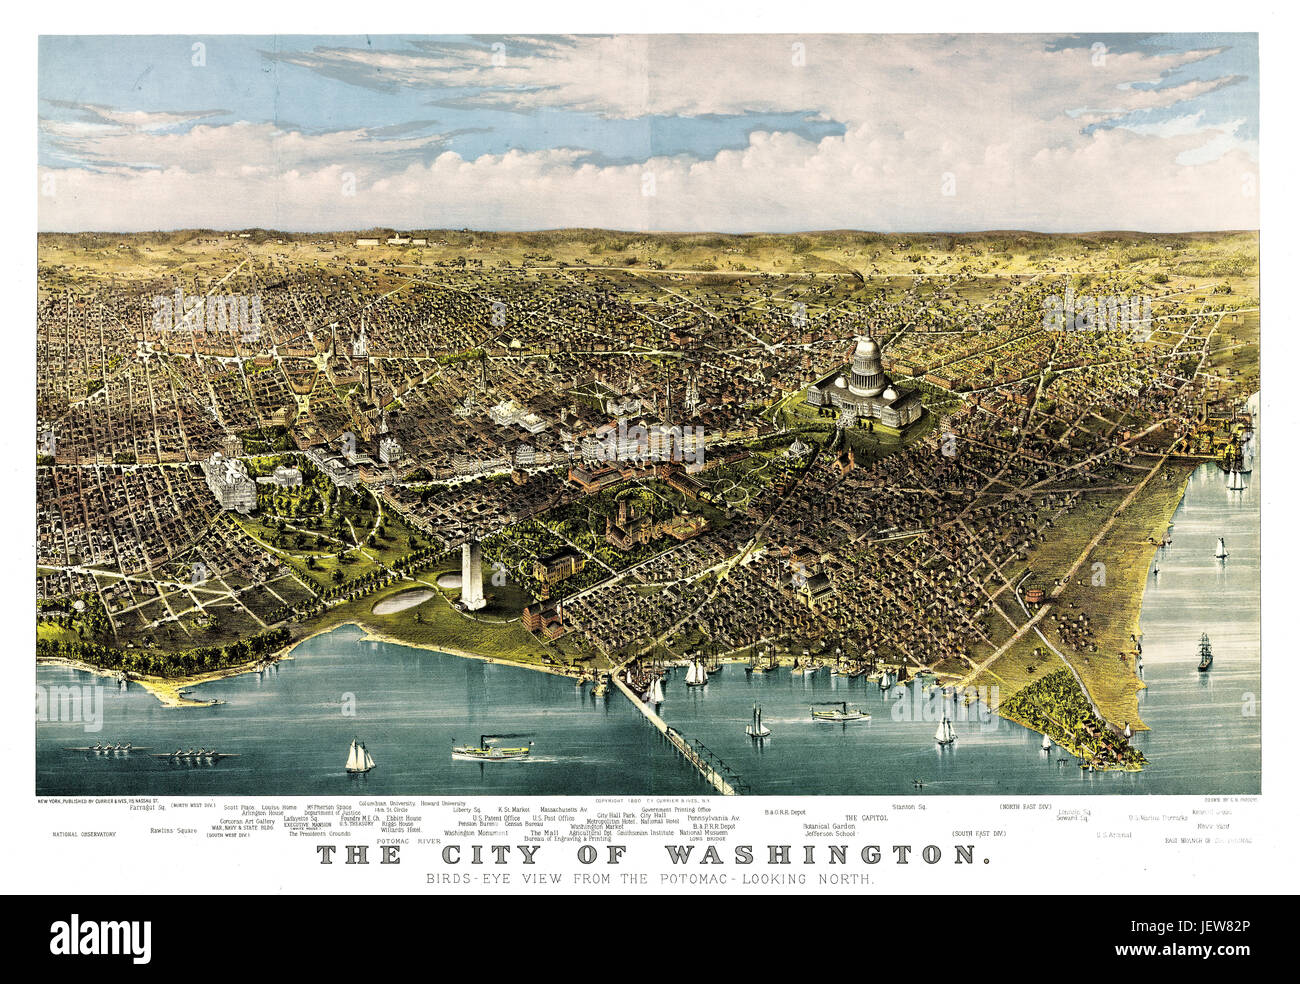 Antigua vista aérea de la ciudad de Washington, D.C., del Potomac. Por Parsons y Charles, publ. Currier & Ives, Nueva York, 1880 Foto de stock